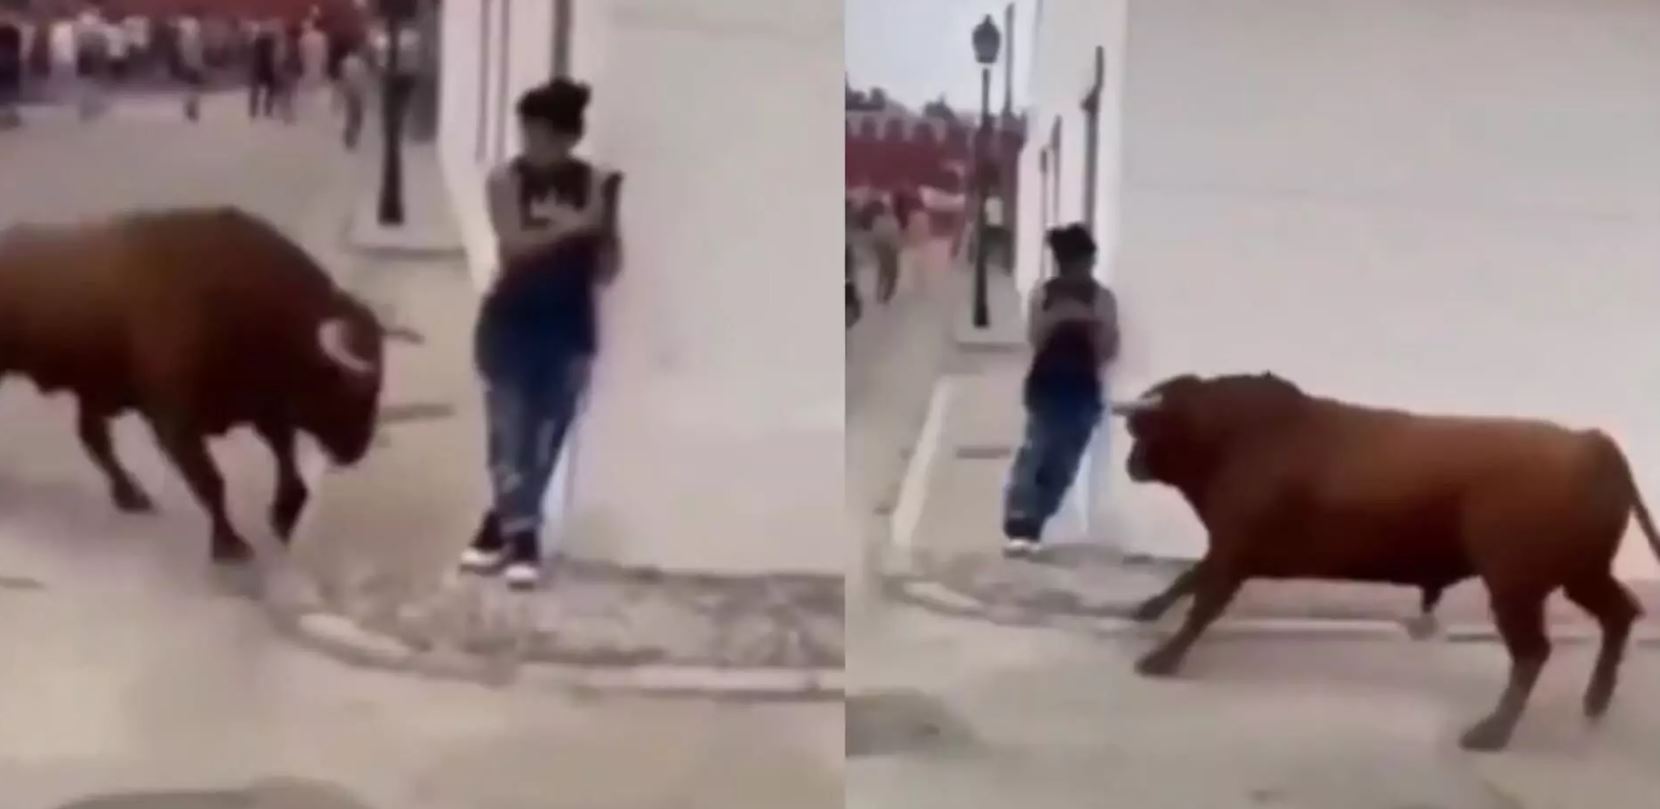 Shocking Video: अचानक गुस्साए बैल ने महिला पर किया अटैक, देख हैरान रह गए लोग